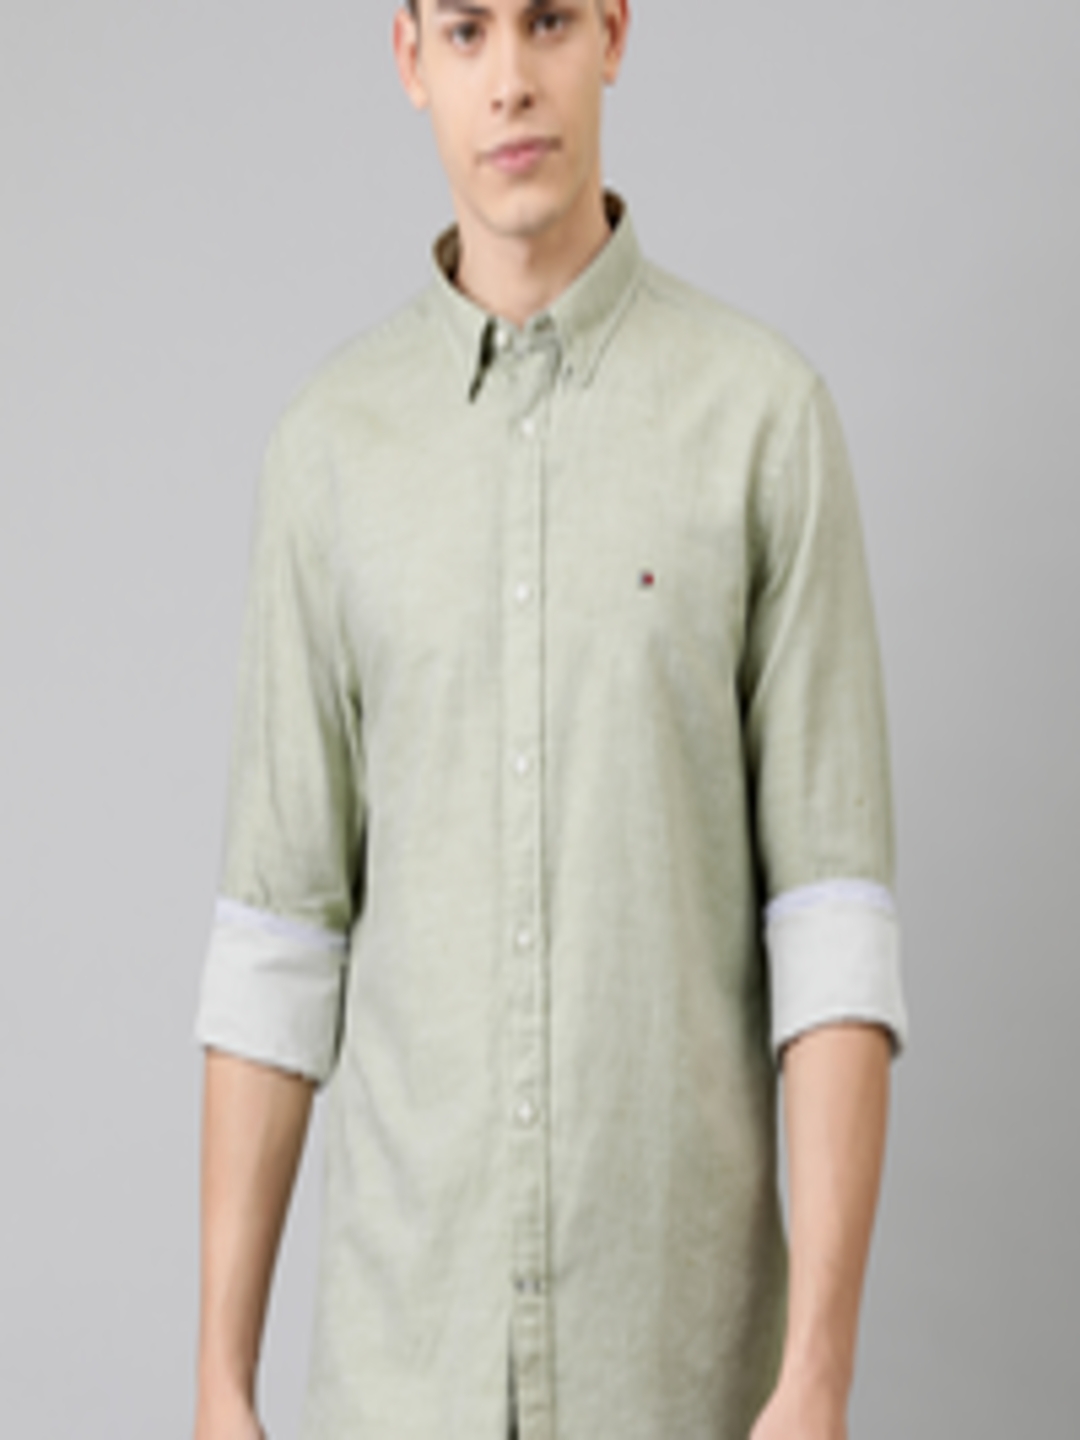 Buy Tommy Hilfiger Men Olive Green Regular Fit Solid Casual Shirt ...